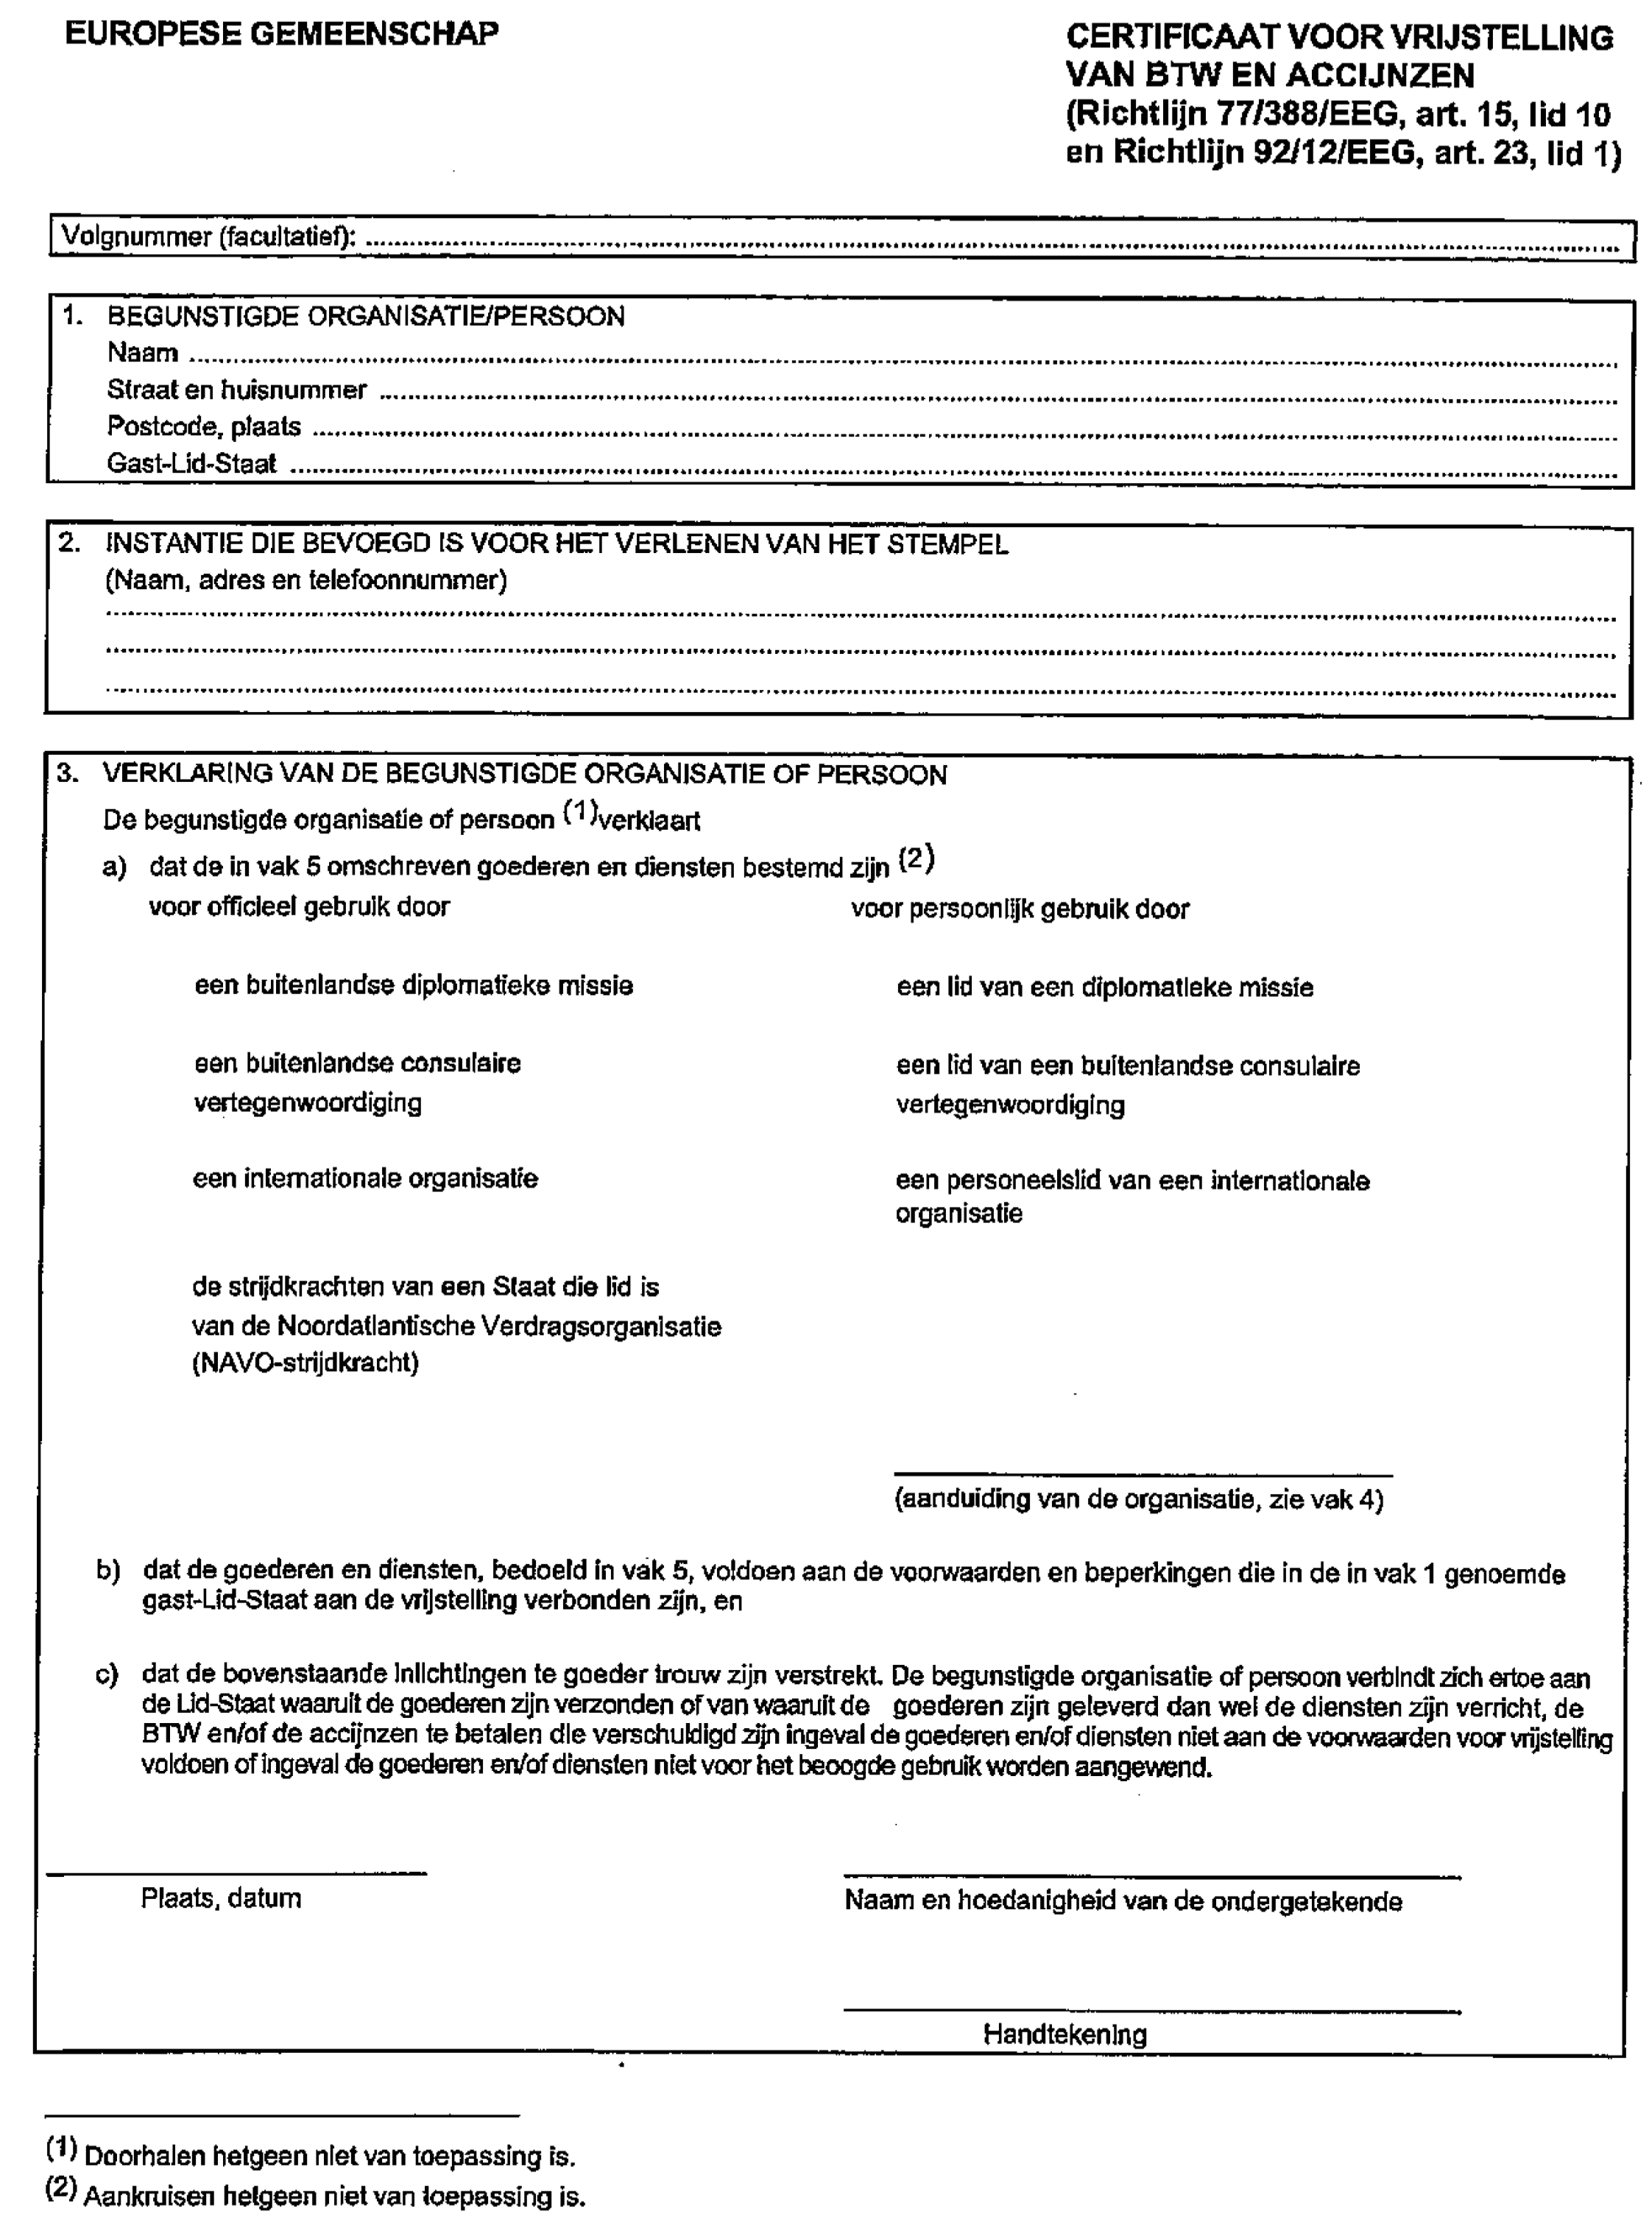 wetten.nl - Regeling - Vrijstelling van BTW en accijns bij  intracommunautaire aankopen door ambassades en consulaten en de leden  daarvan, internationale organisaties en bepaaIde functionarissen daarvan,  en NAVO-onderdelen - BWBR0028013